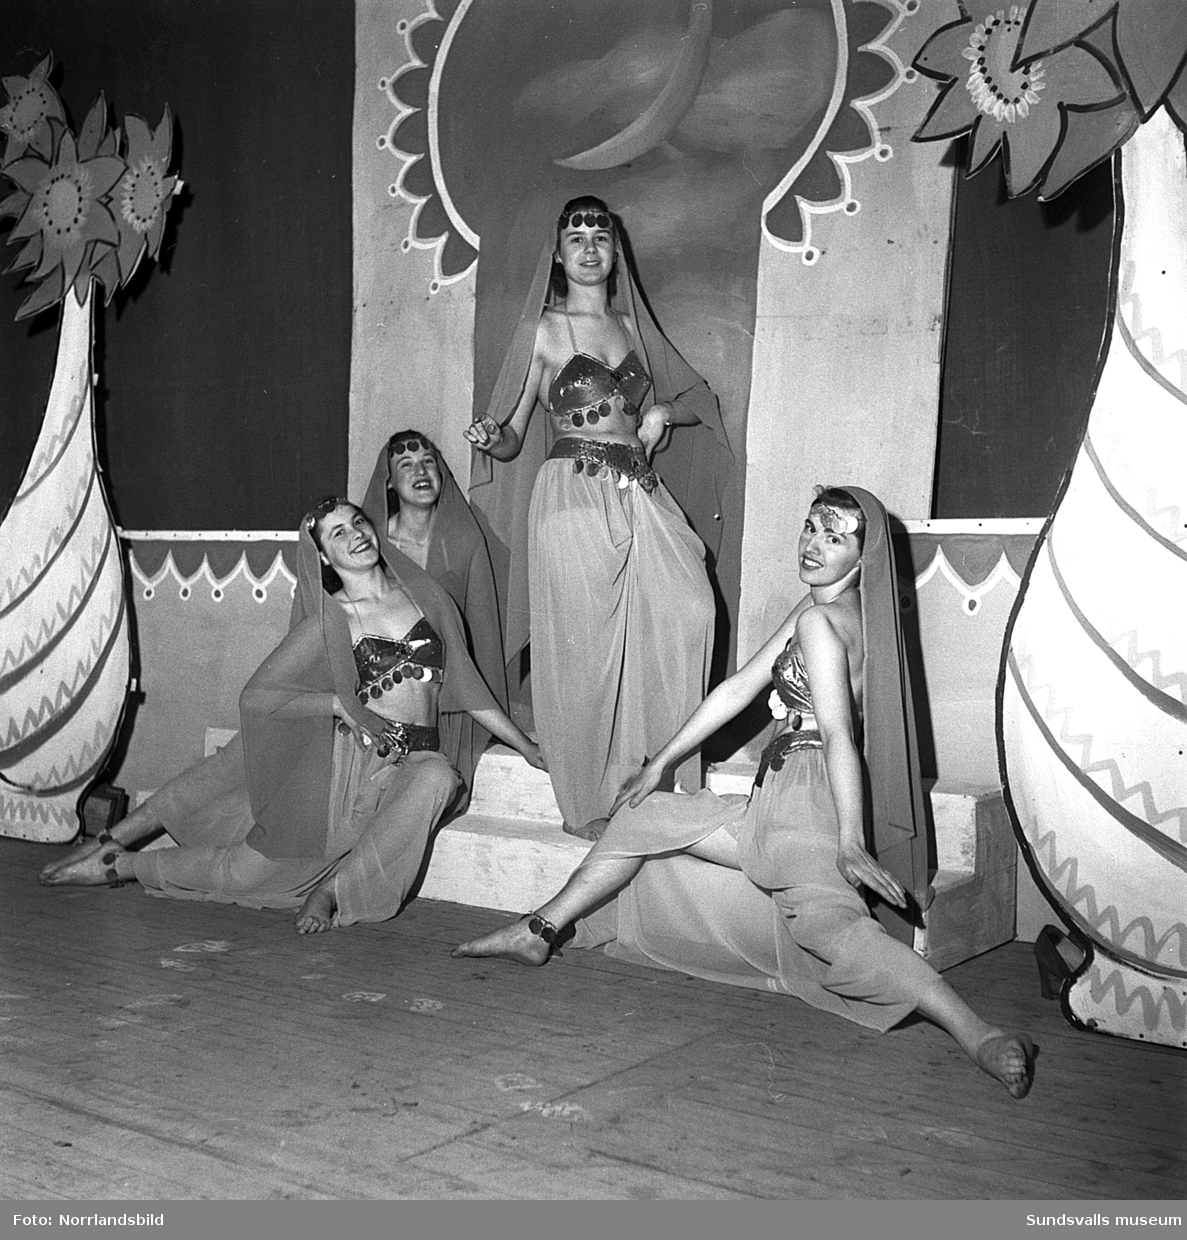 Elis Ågrens nyårsrevy 1949, "Pang i fjället". Bildserien är från den sjunde föreställningen i slutet av januari 1950 och balettscenen på bilderna 8-10 medverkar Kerstin Lindgren, Ulla Norberg, Eivor Bergfeldt och Gun Sandström.